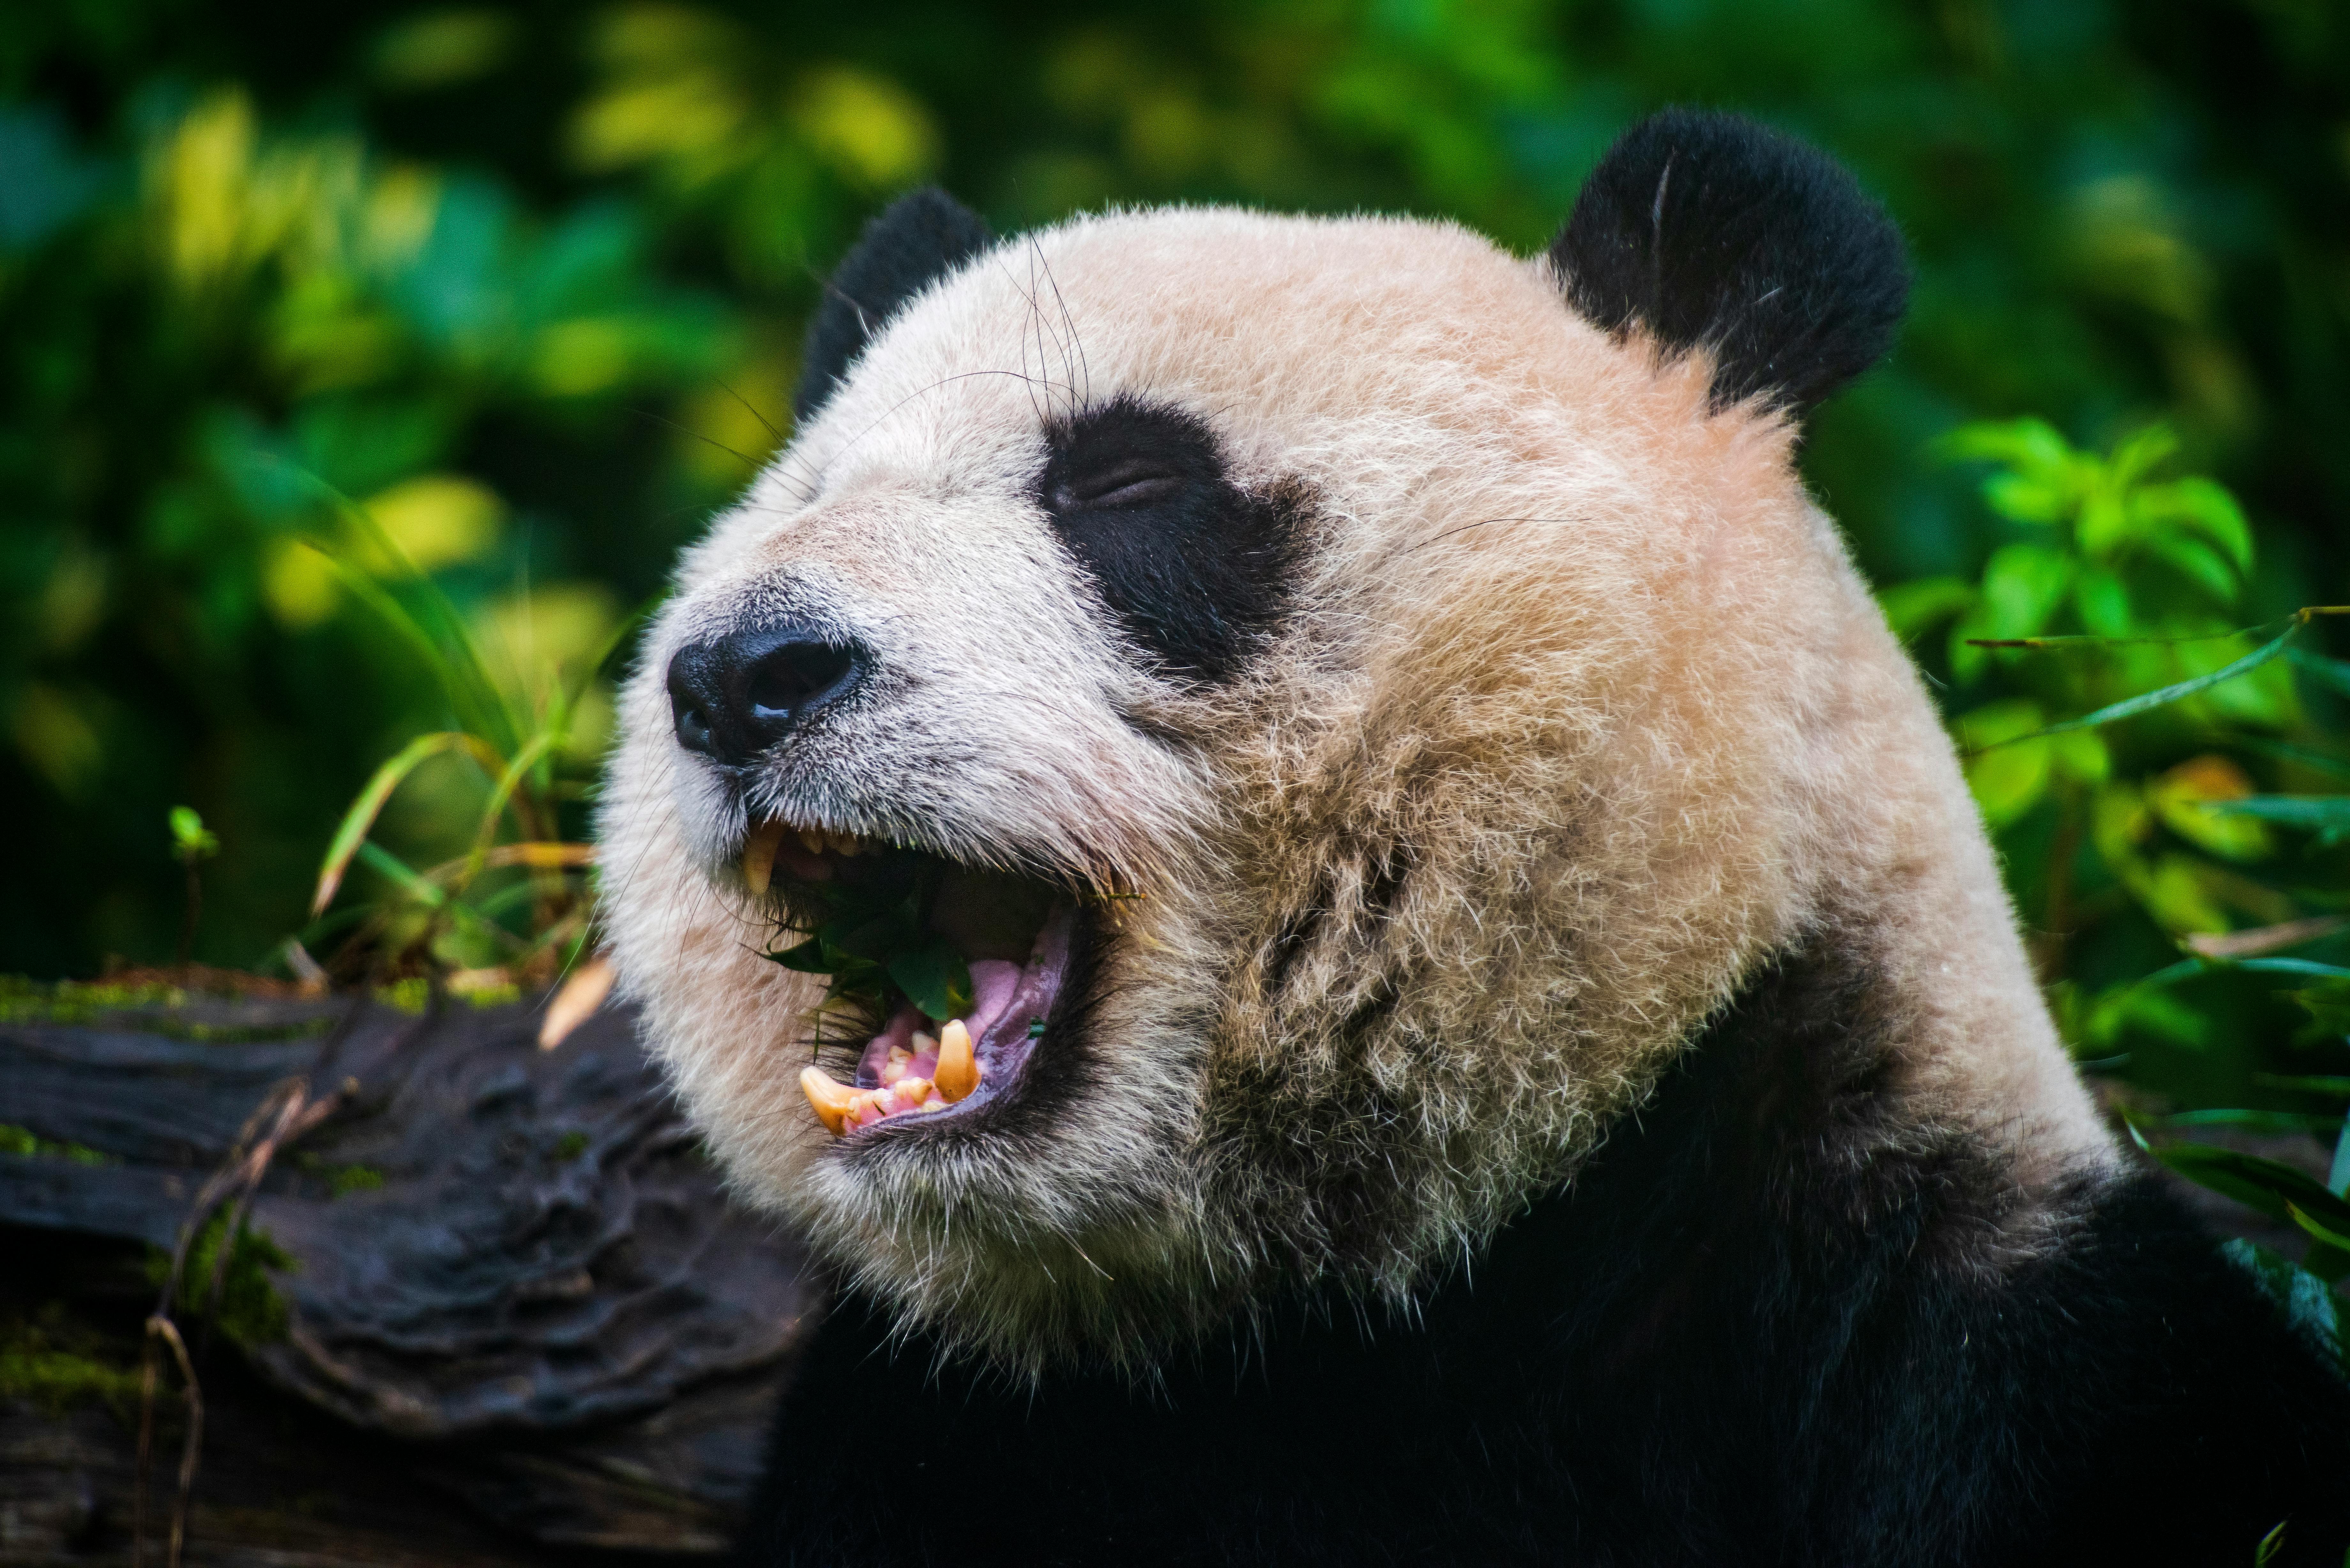 Panda Bear Photos, Download The BEST Free Panda Bear Stock Photos & HD  Images